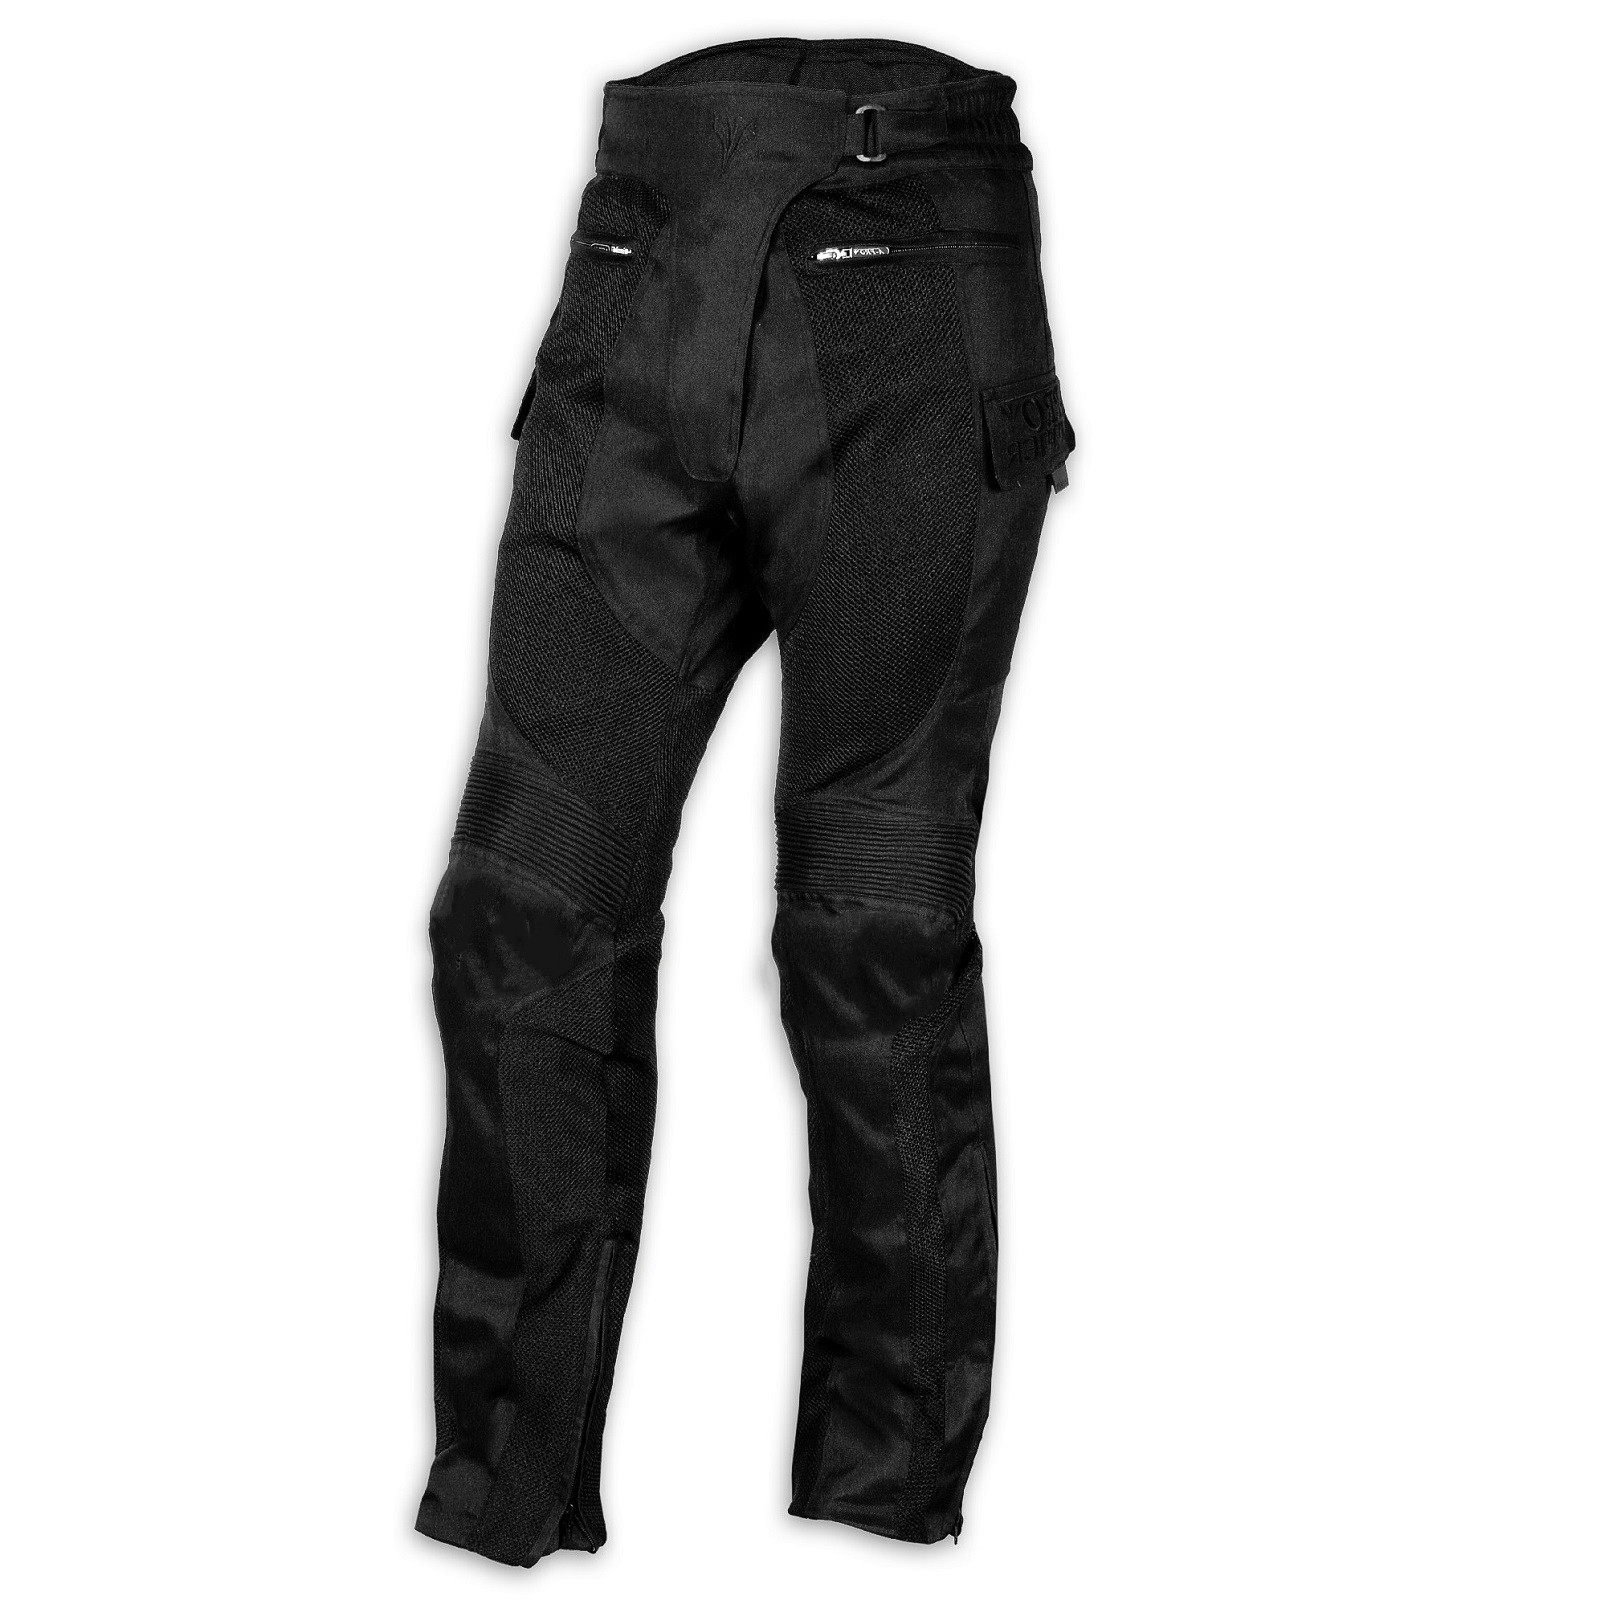 Abbigliamento Moto e Accessori - Pantaloni Moto Jeans Mesh Tessuto Cordura  Traforato Estivo Protezioni CE